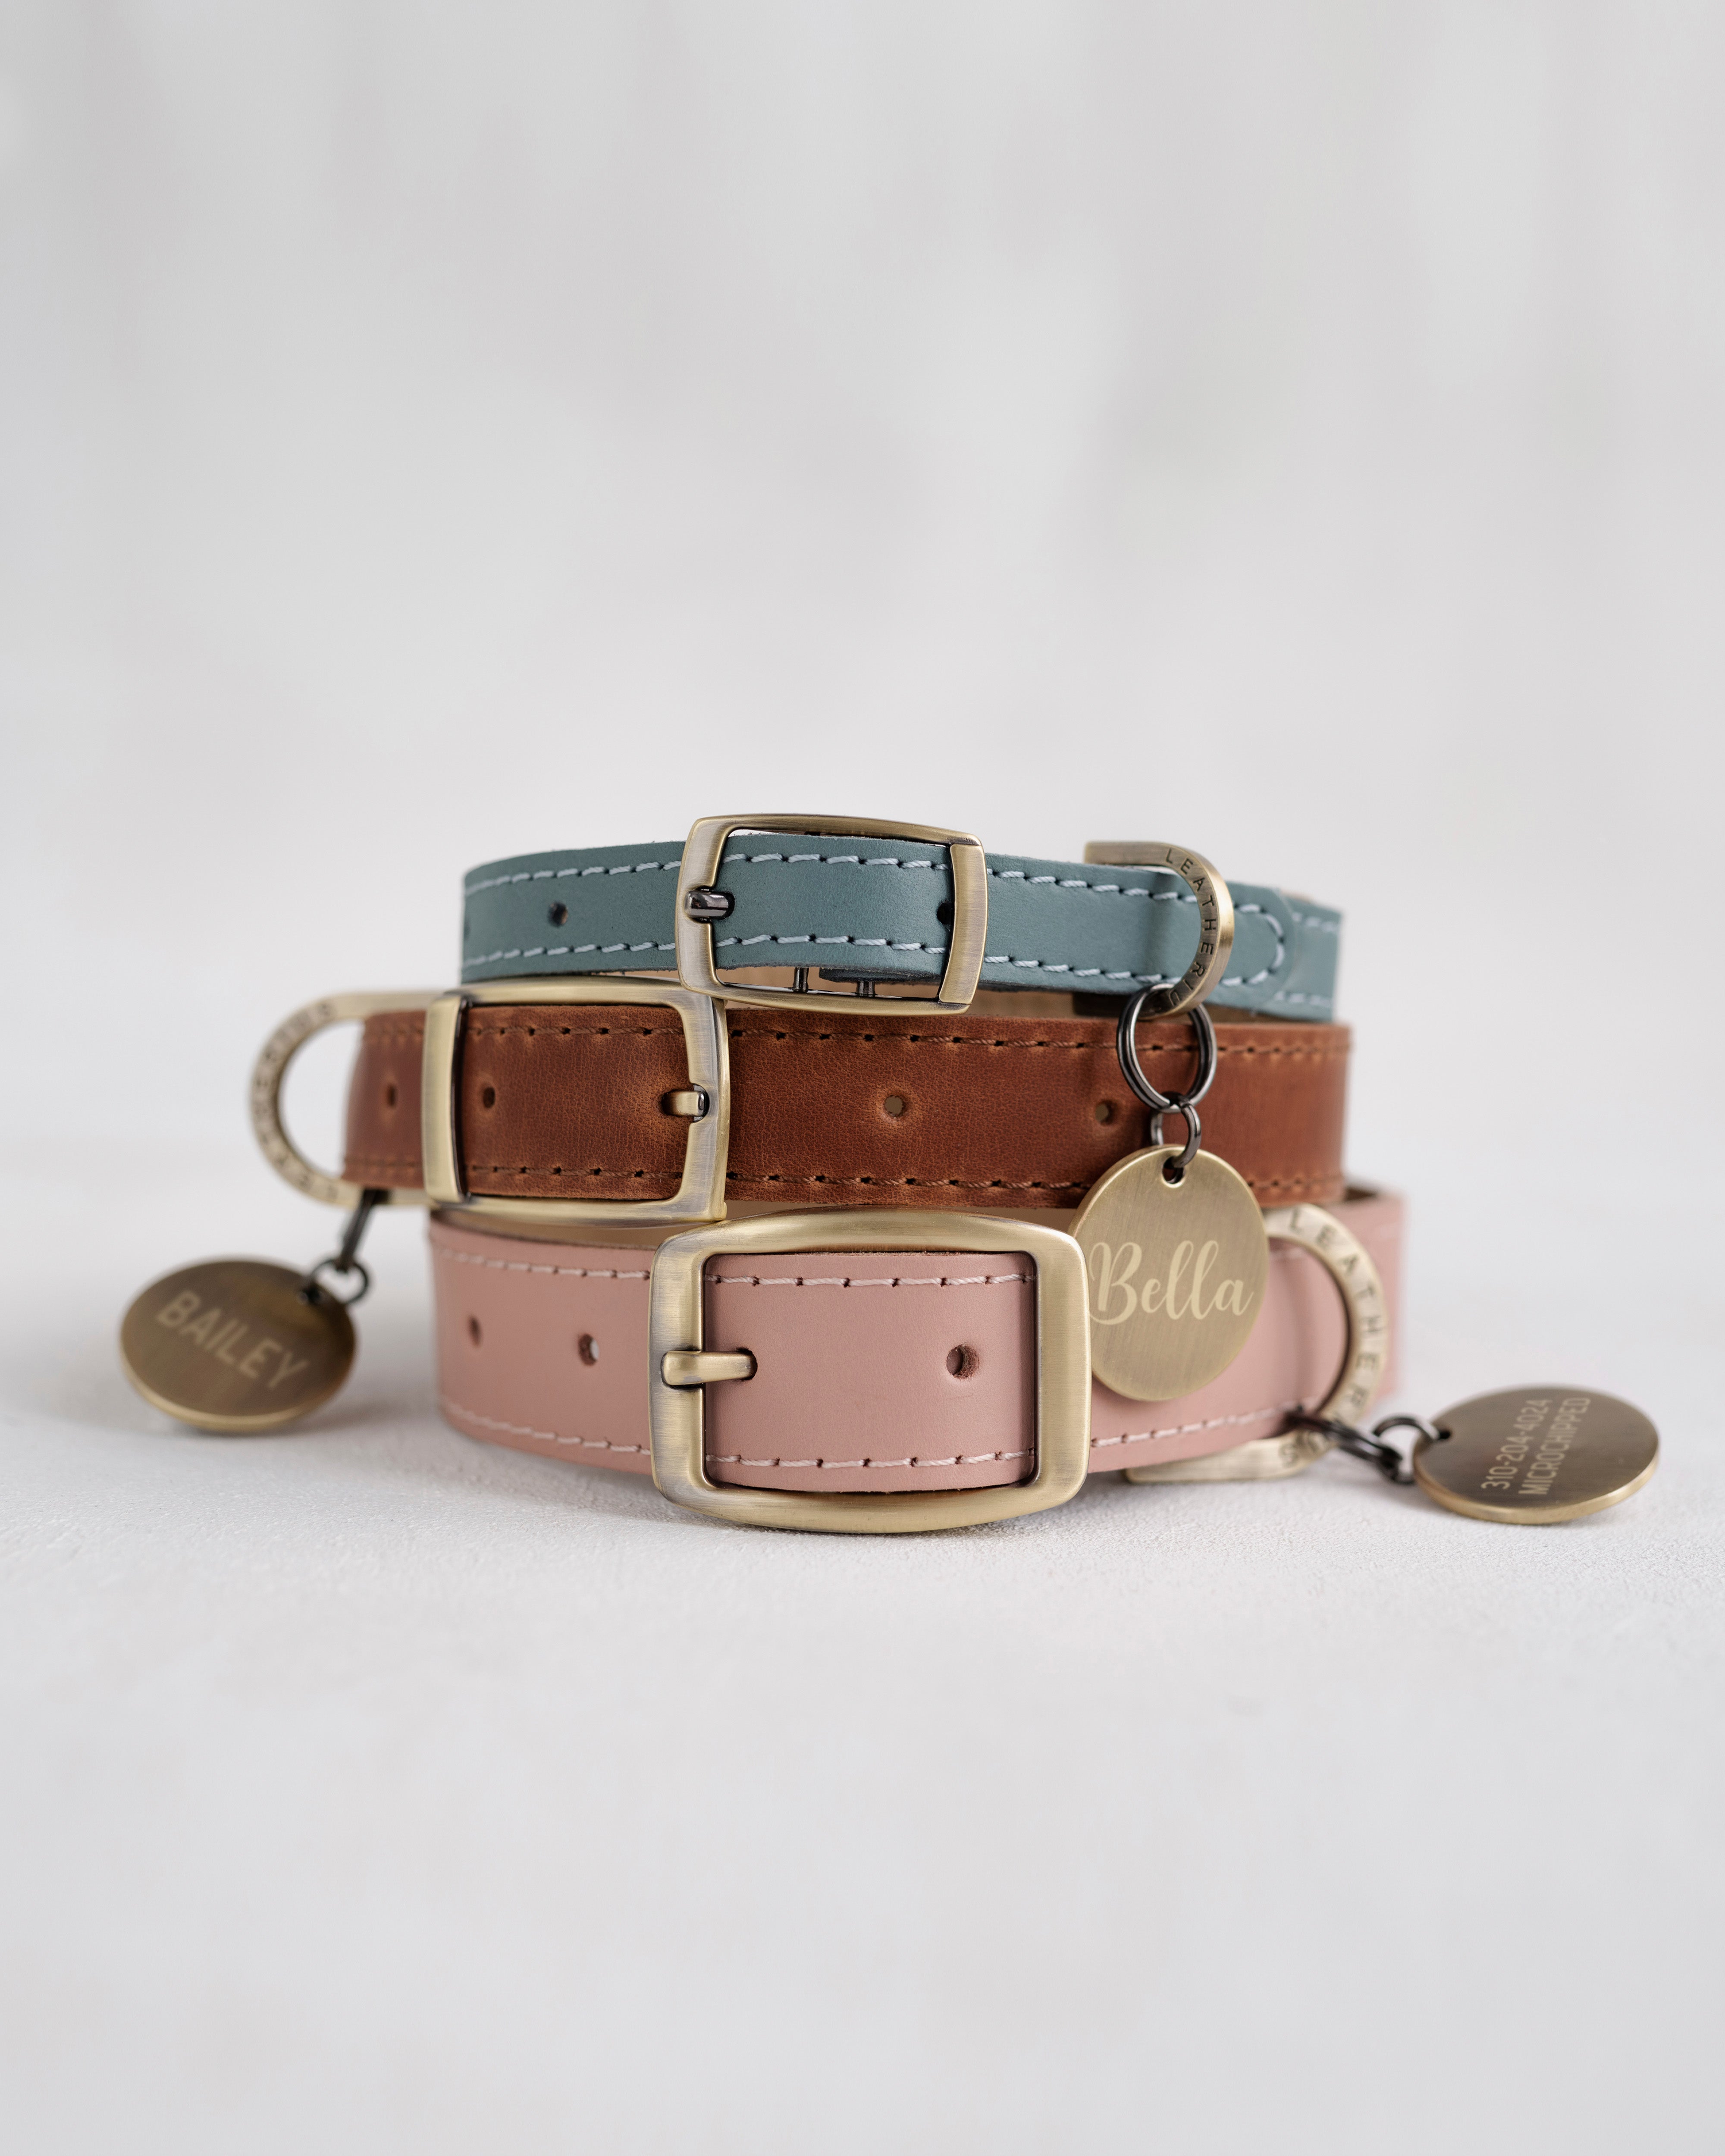 Custom leather dog collar for boys